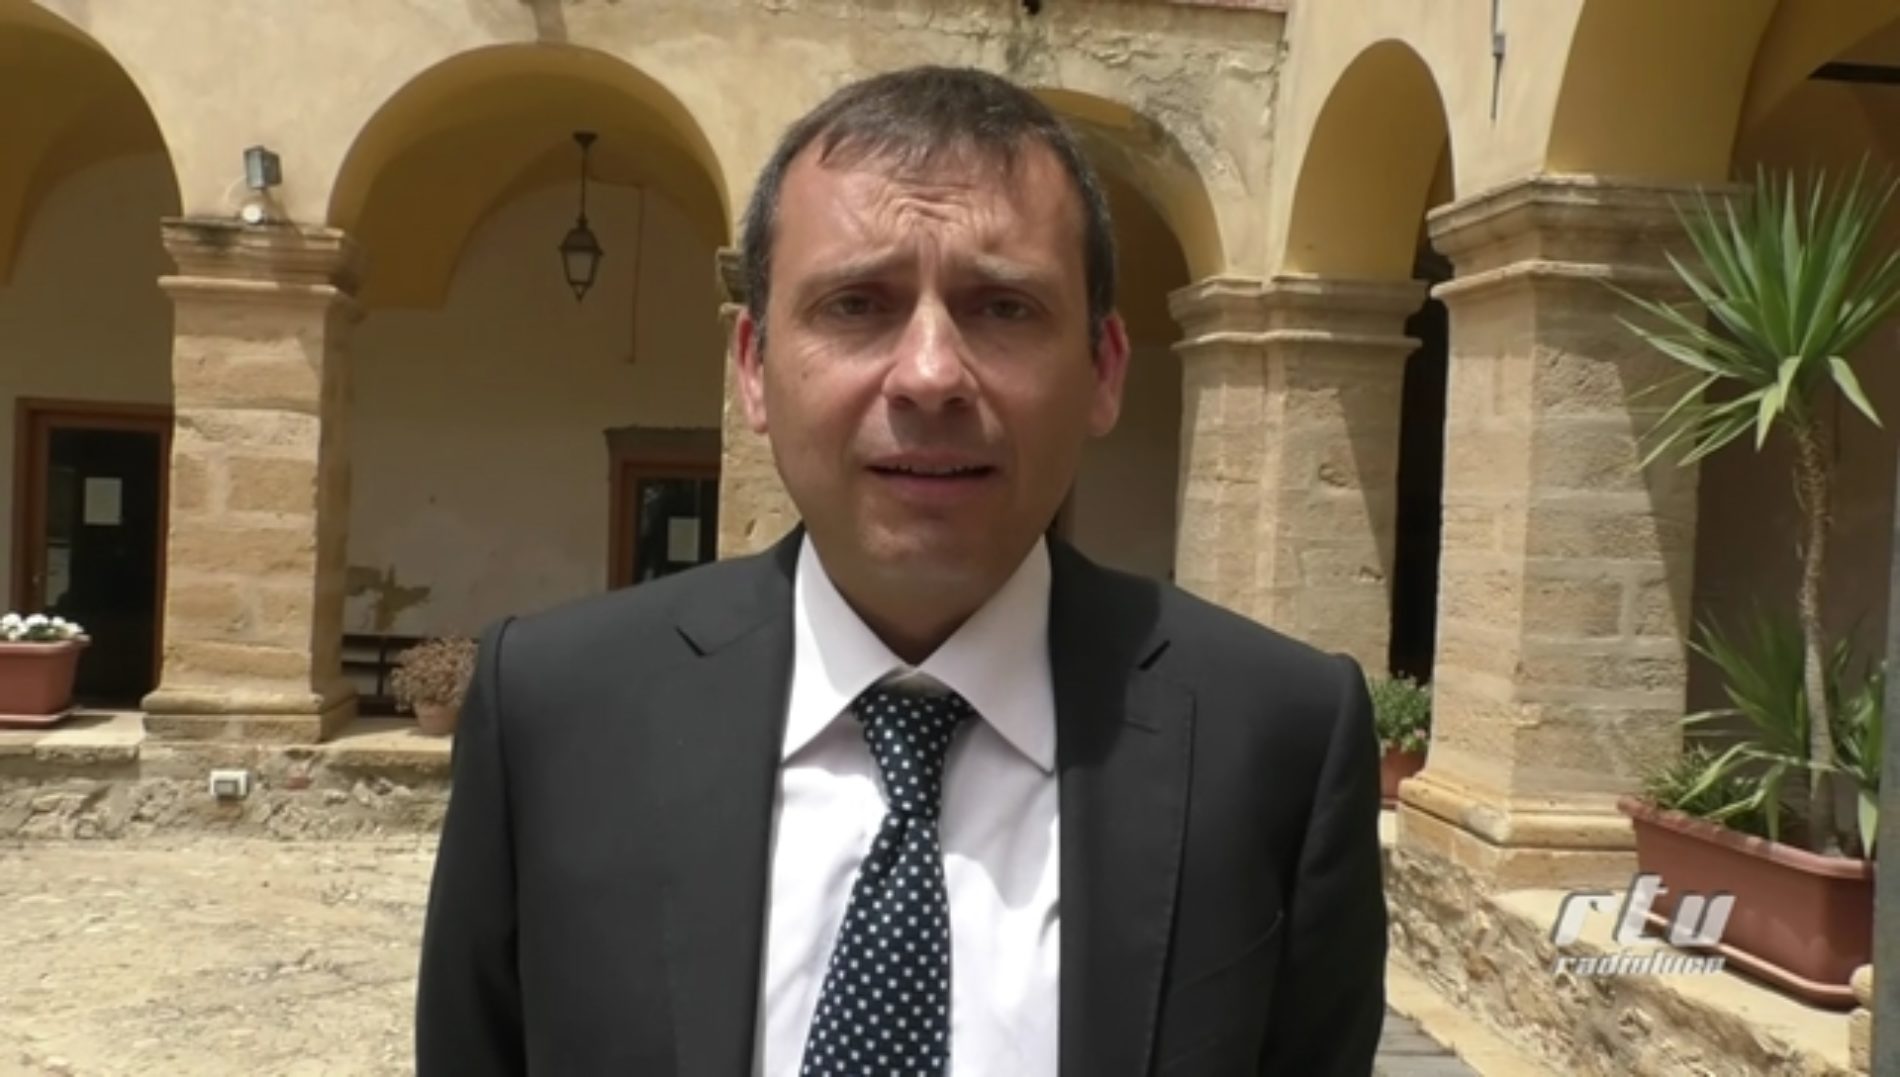 Video – intervista al sindaco Fabio Accardi dopo la cerimonia sull’intitolazione della passeggiata alla Beata Maria Cristina di Savoia